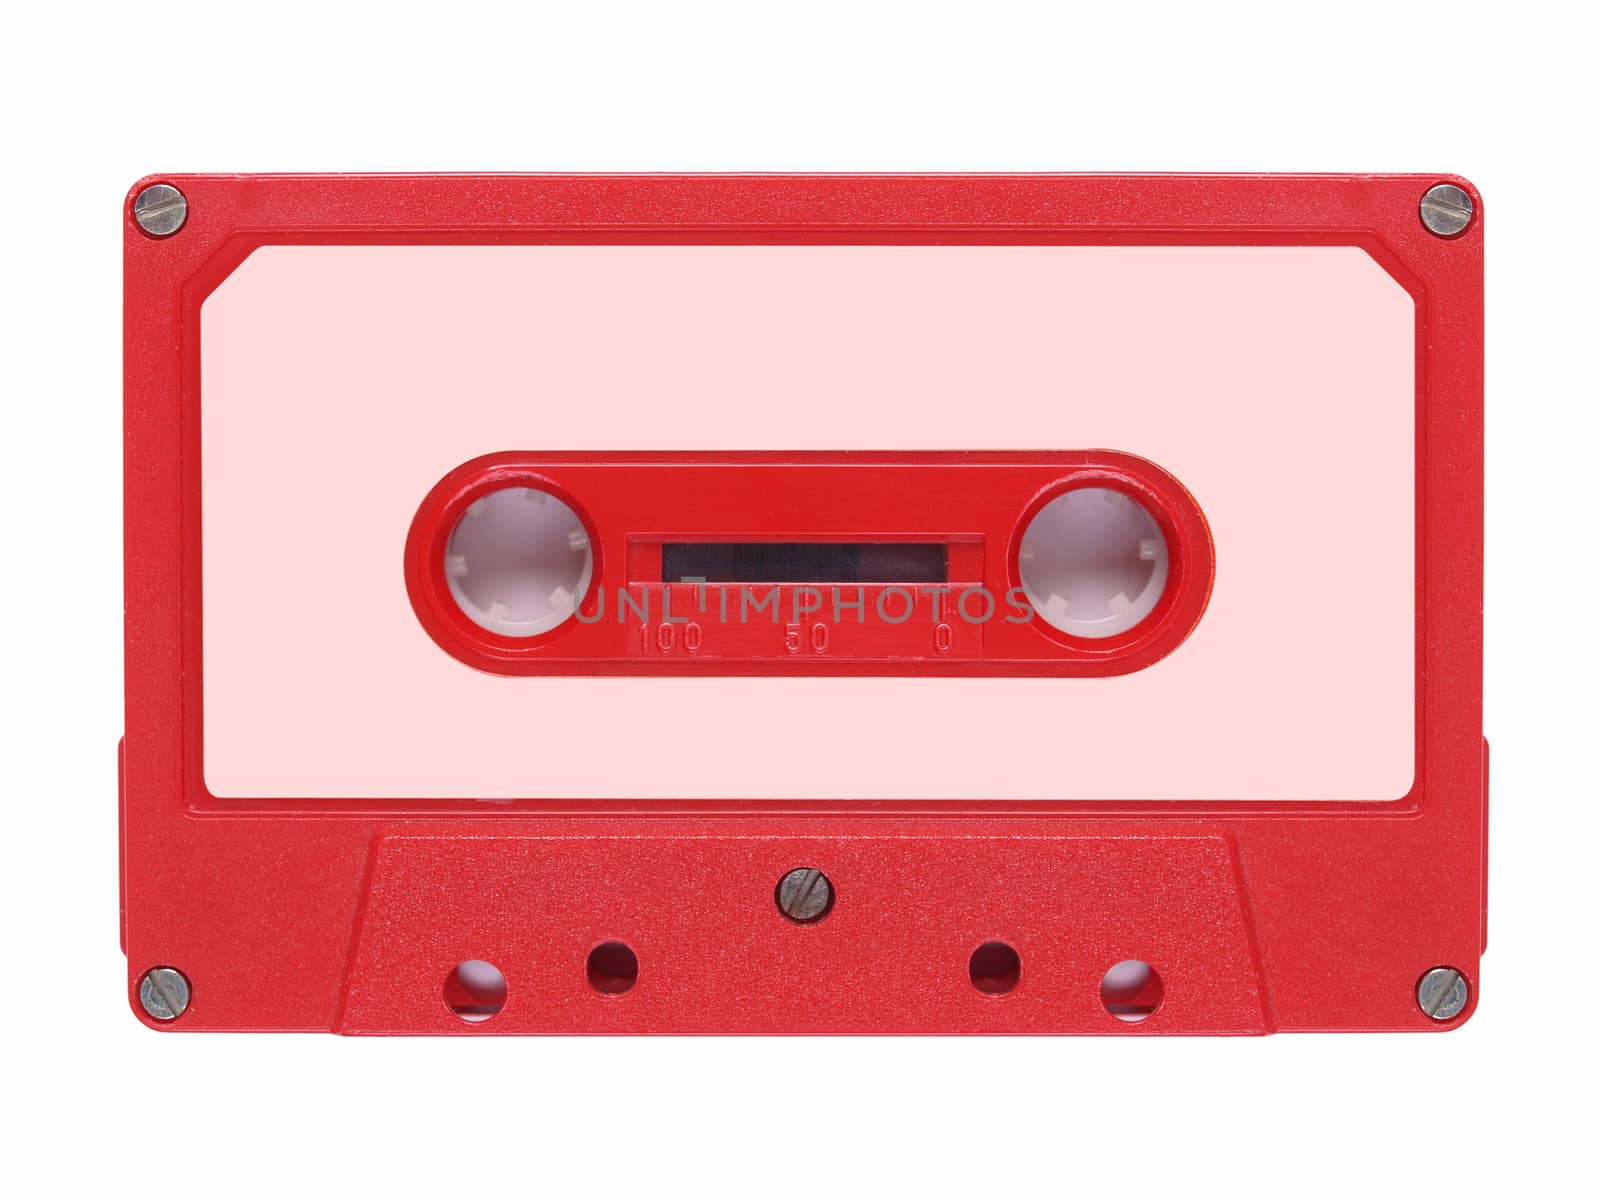 Tape cassette by claudiodivizia